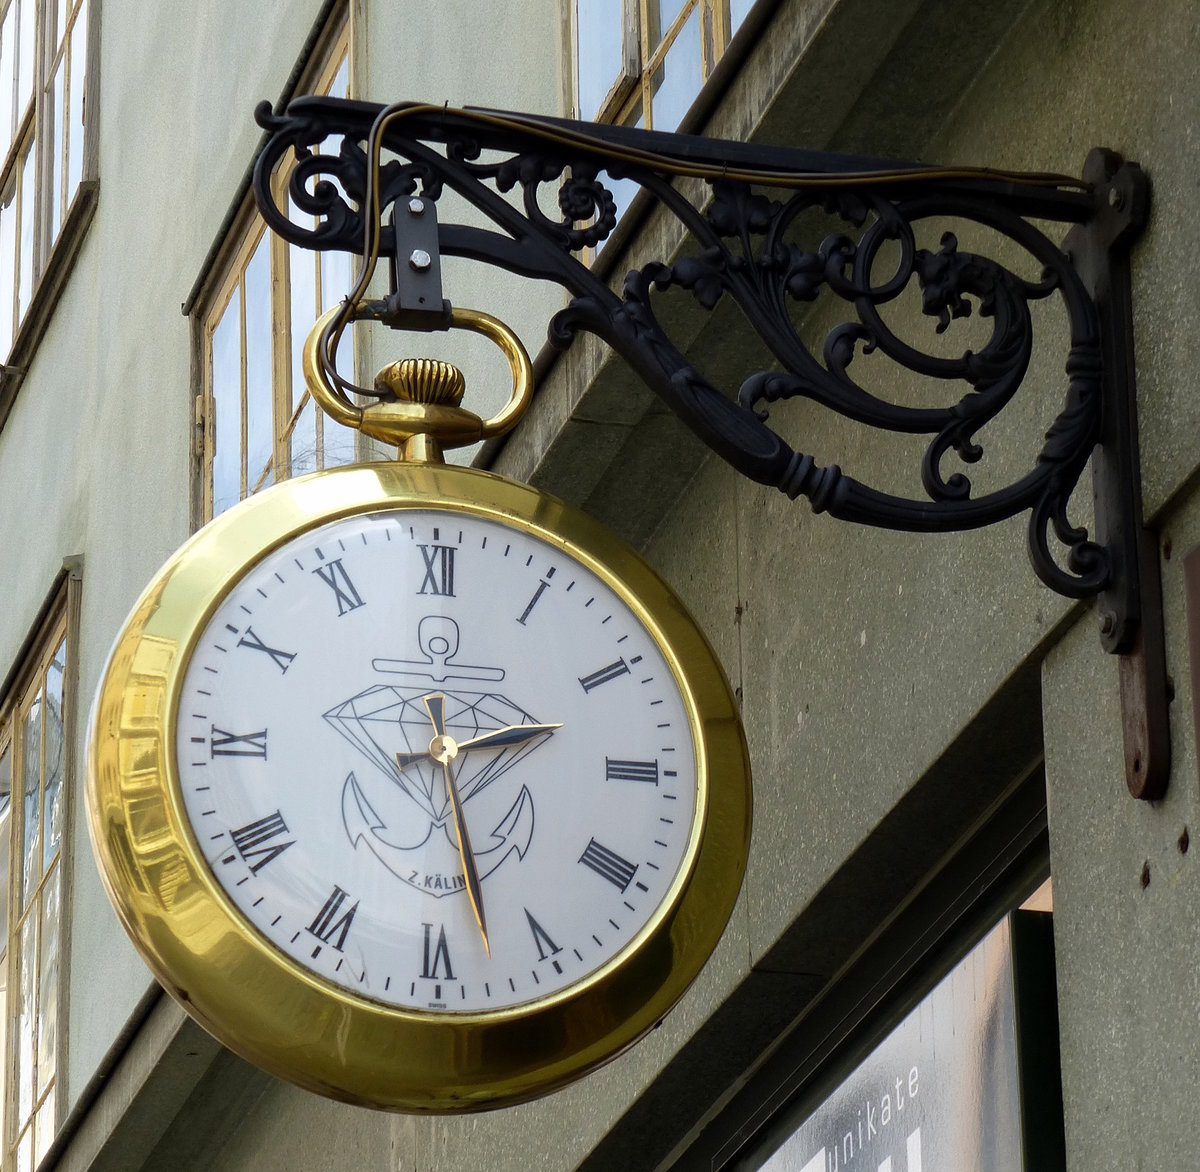 Einsiedel, Schmuck und Uhren Z.Kälin in der Hauptstraße, Mai 2017